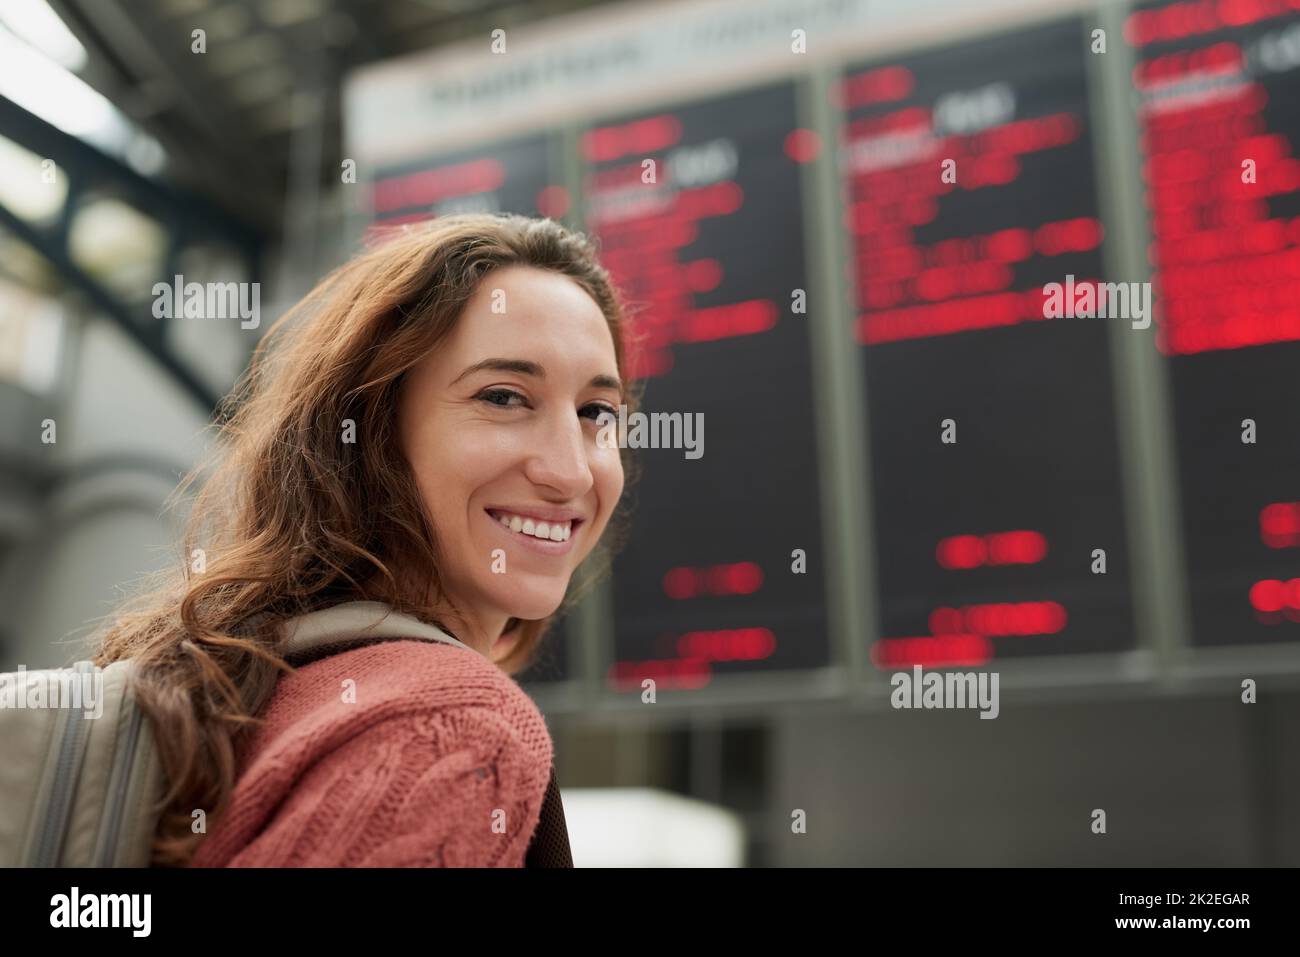 Ich fahre in den Urlaub. Rückfahrporträt einer attraktiven jungen Frau, die auf einem Flughafen steht. Stockfoto